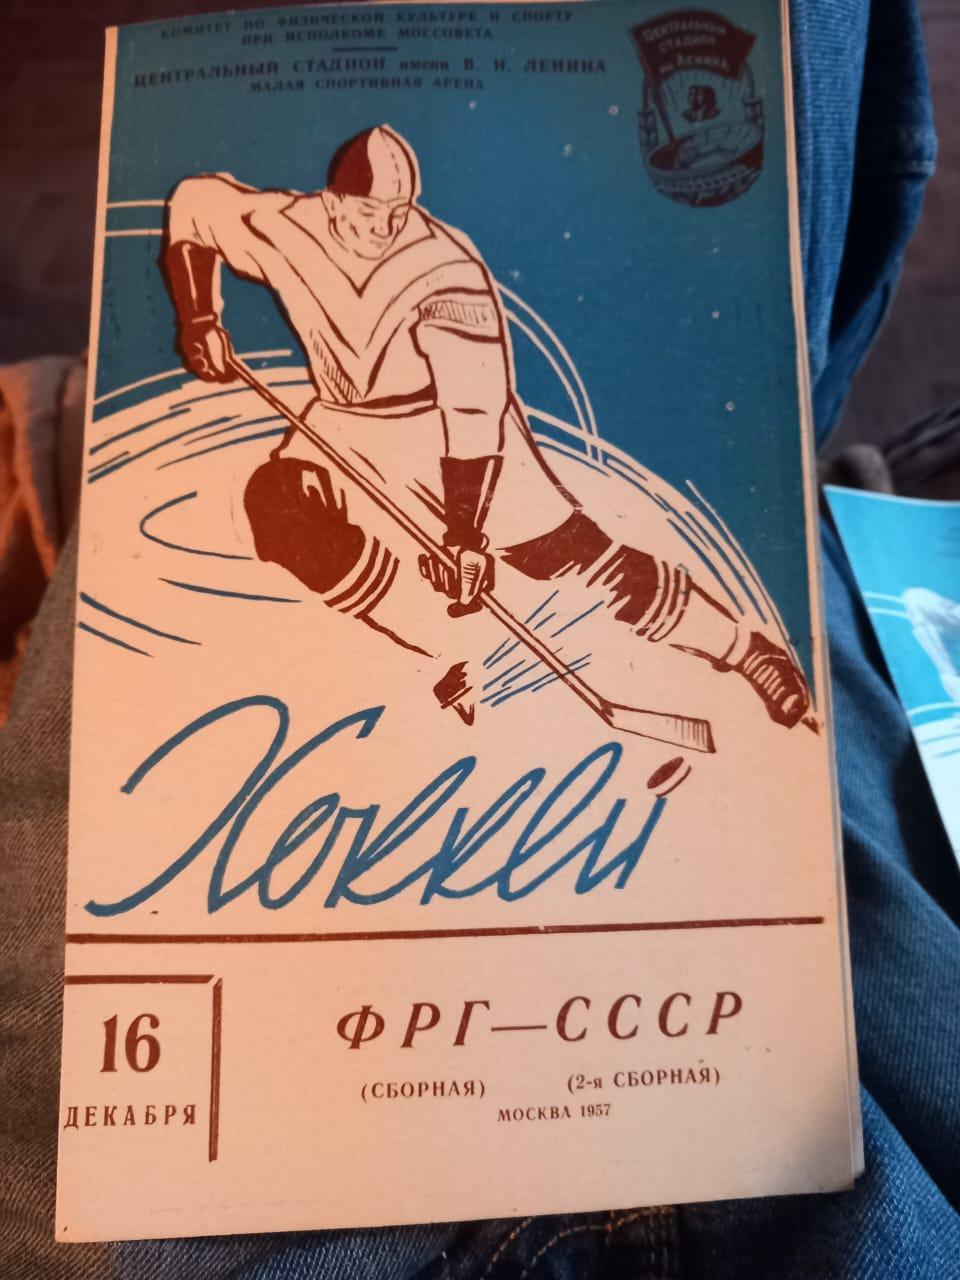 ФРГ - СССР 2-я сборная 16.12.1957